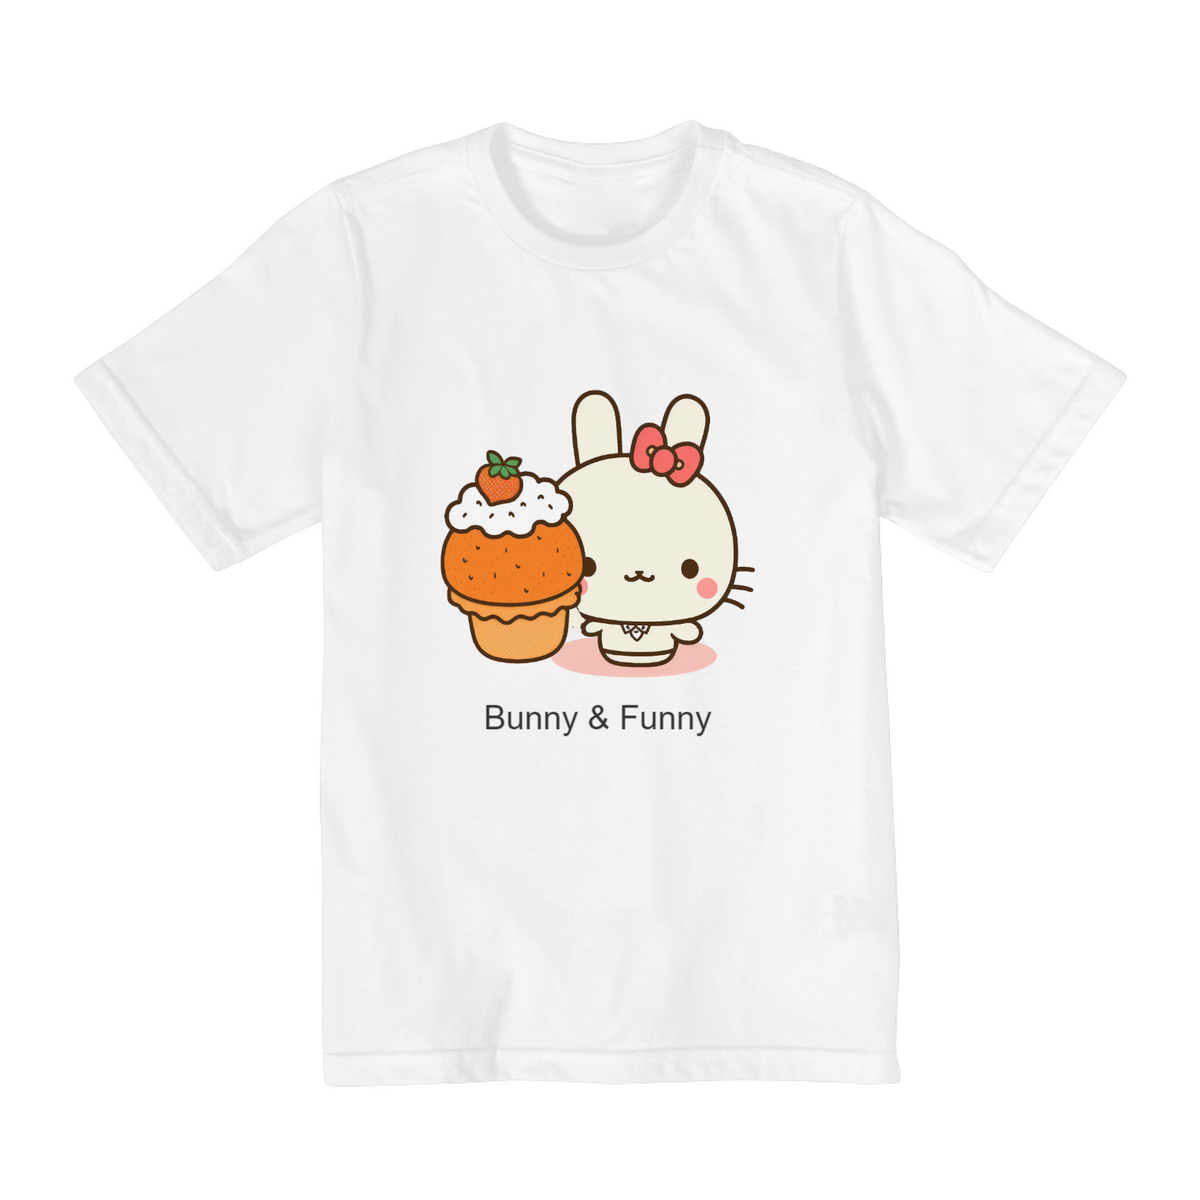 Nome do produto: Bunny & Funny - Camiseta Infantil (10, 12 e 14 anos)